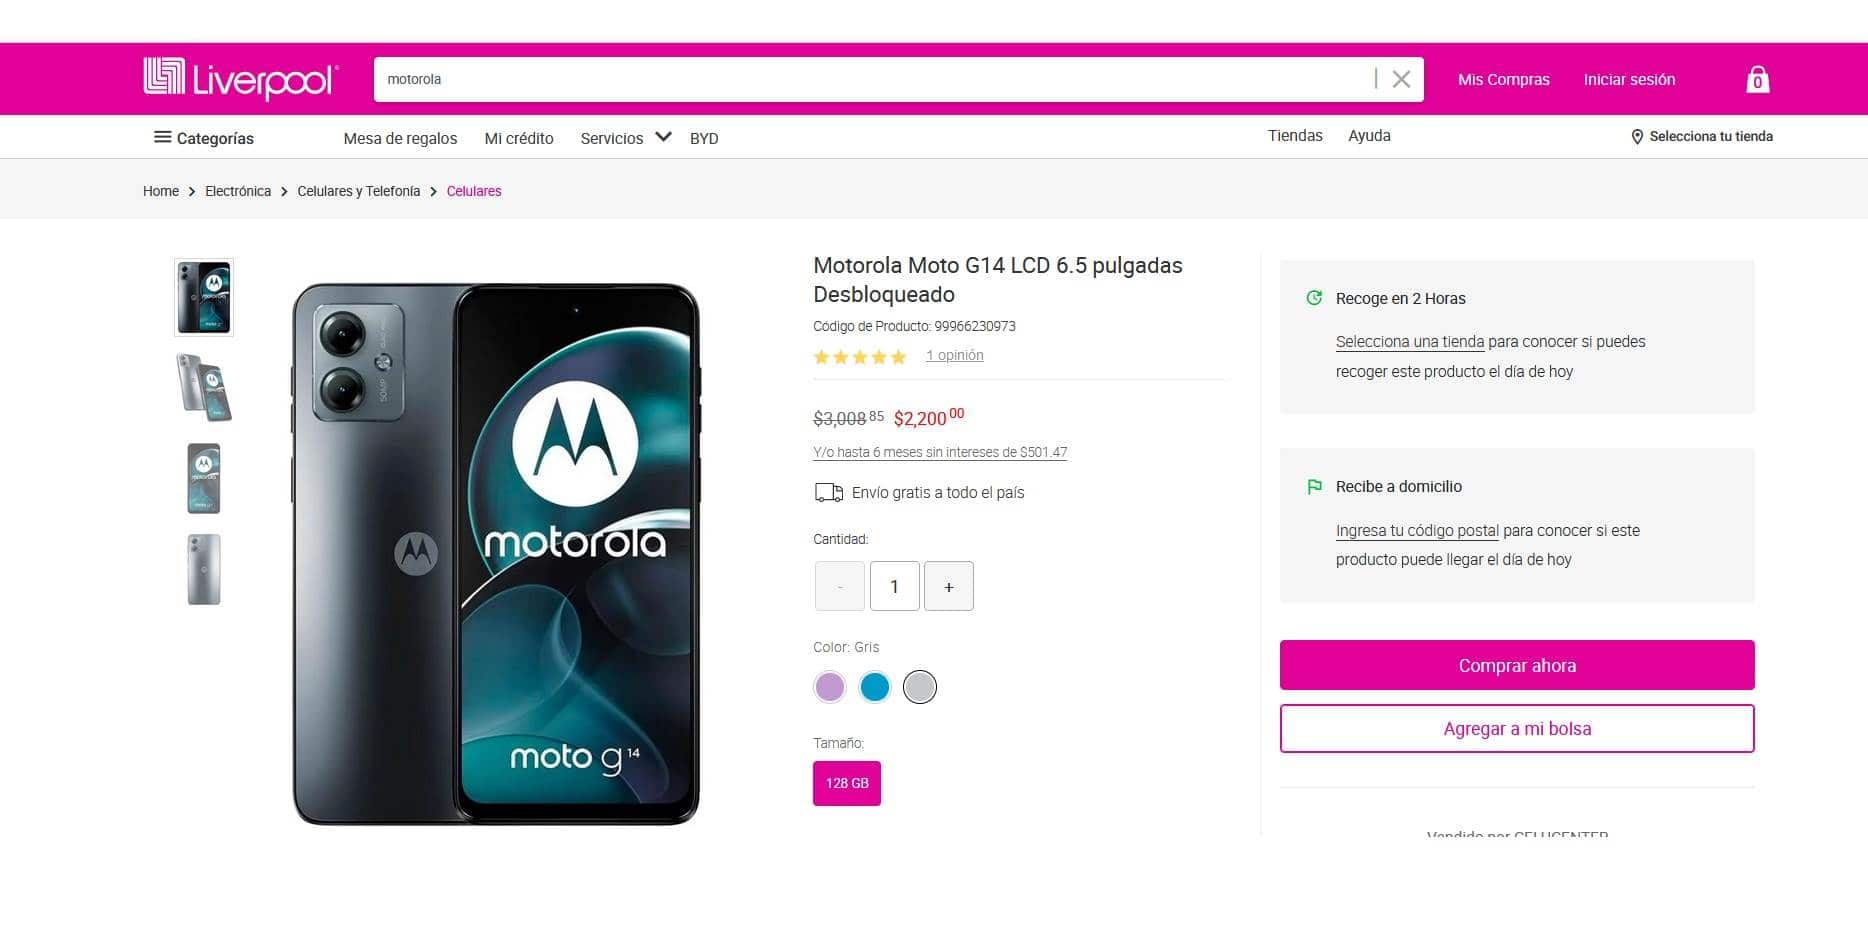 Características y cuánto cuesta del smartphone Motorola Moto G14